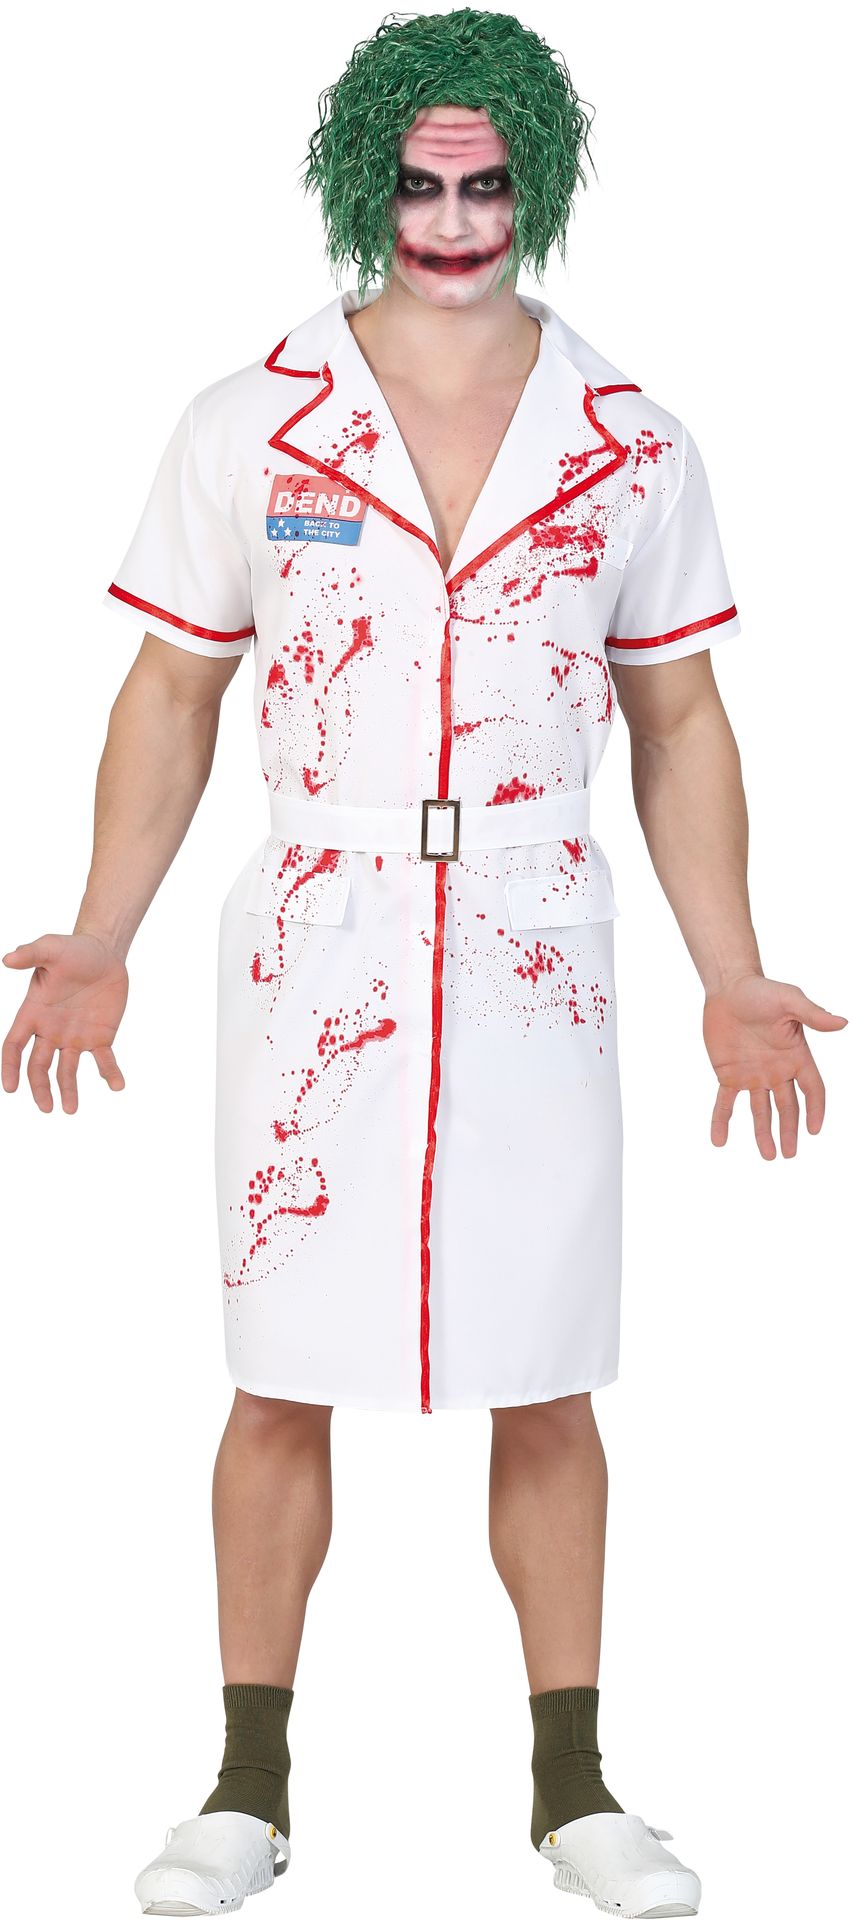 The Joker verpleegkundige kostuum